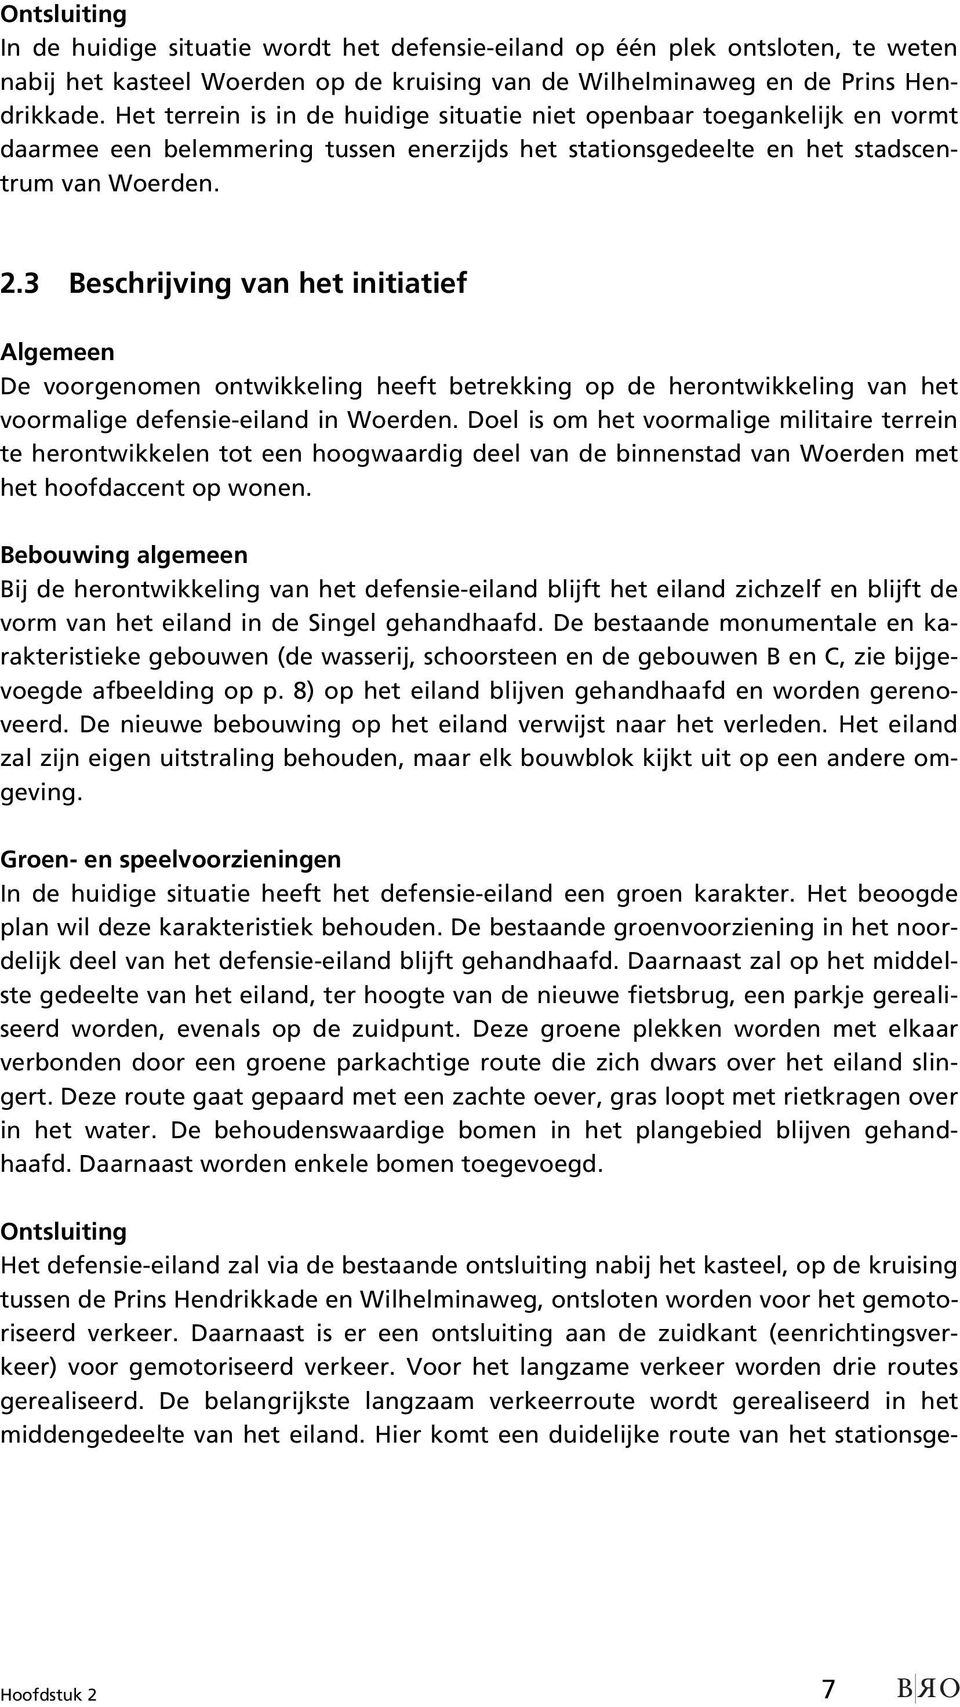 3 Beschrijving van het initiatief Algemeen De voorgenomen ontwikkeling heeft betrekking op de herontwikkeling van het voormalige defensie-eiland in Woerden.